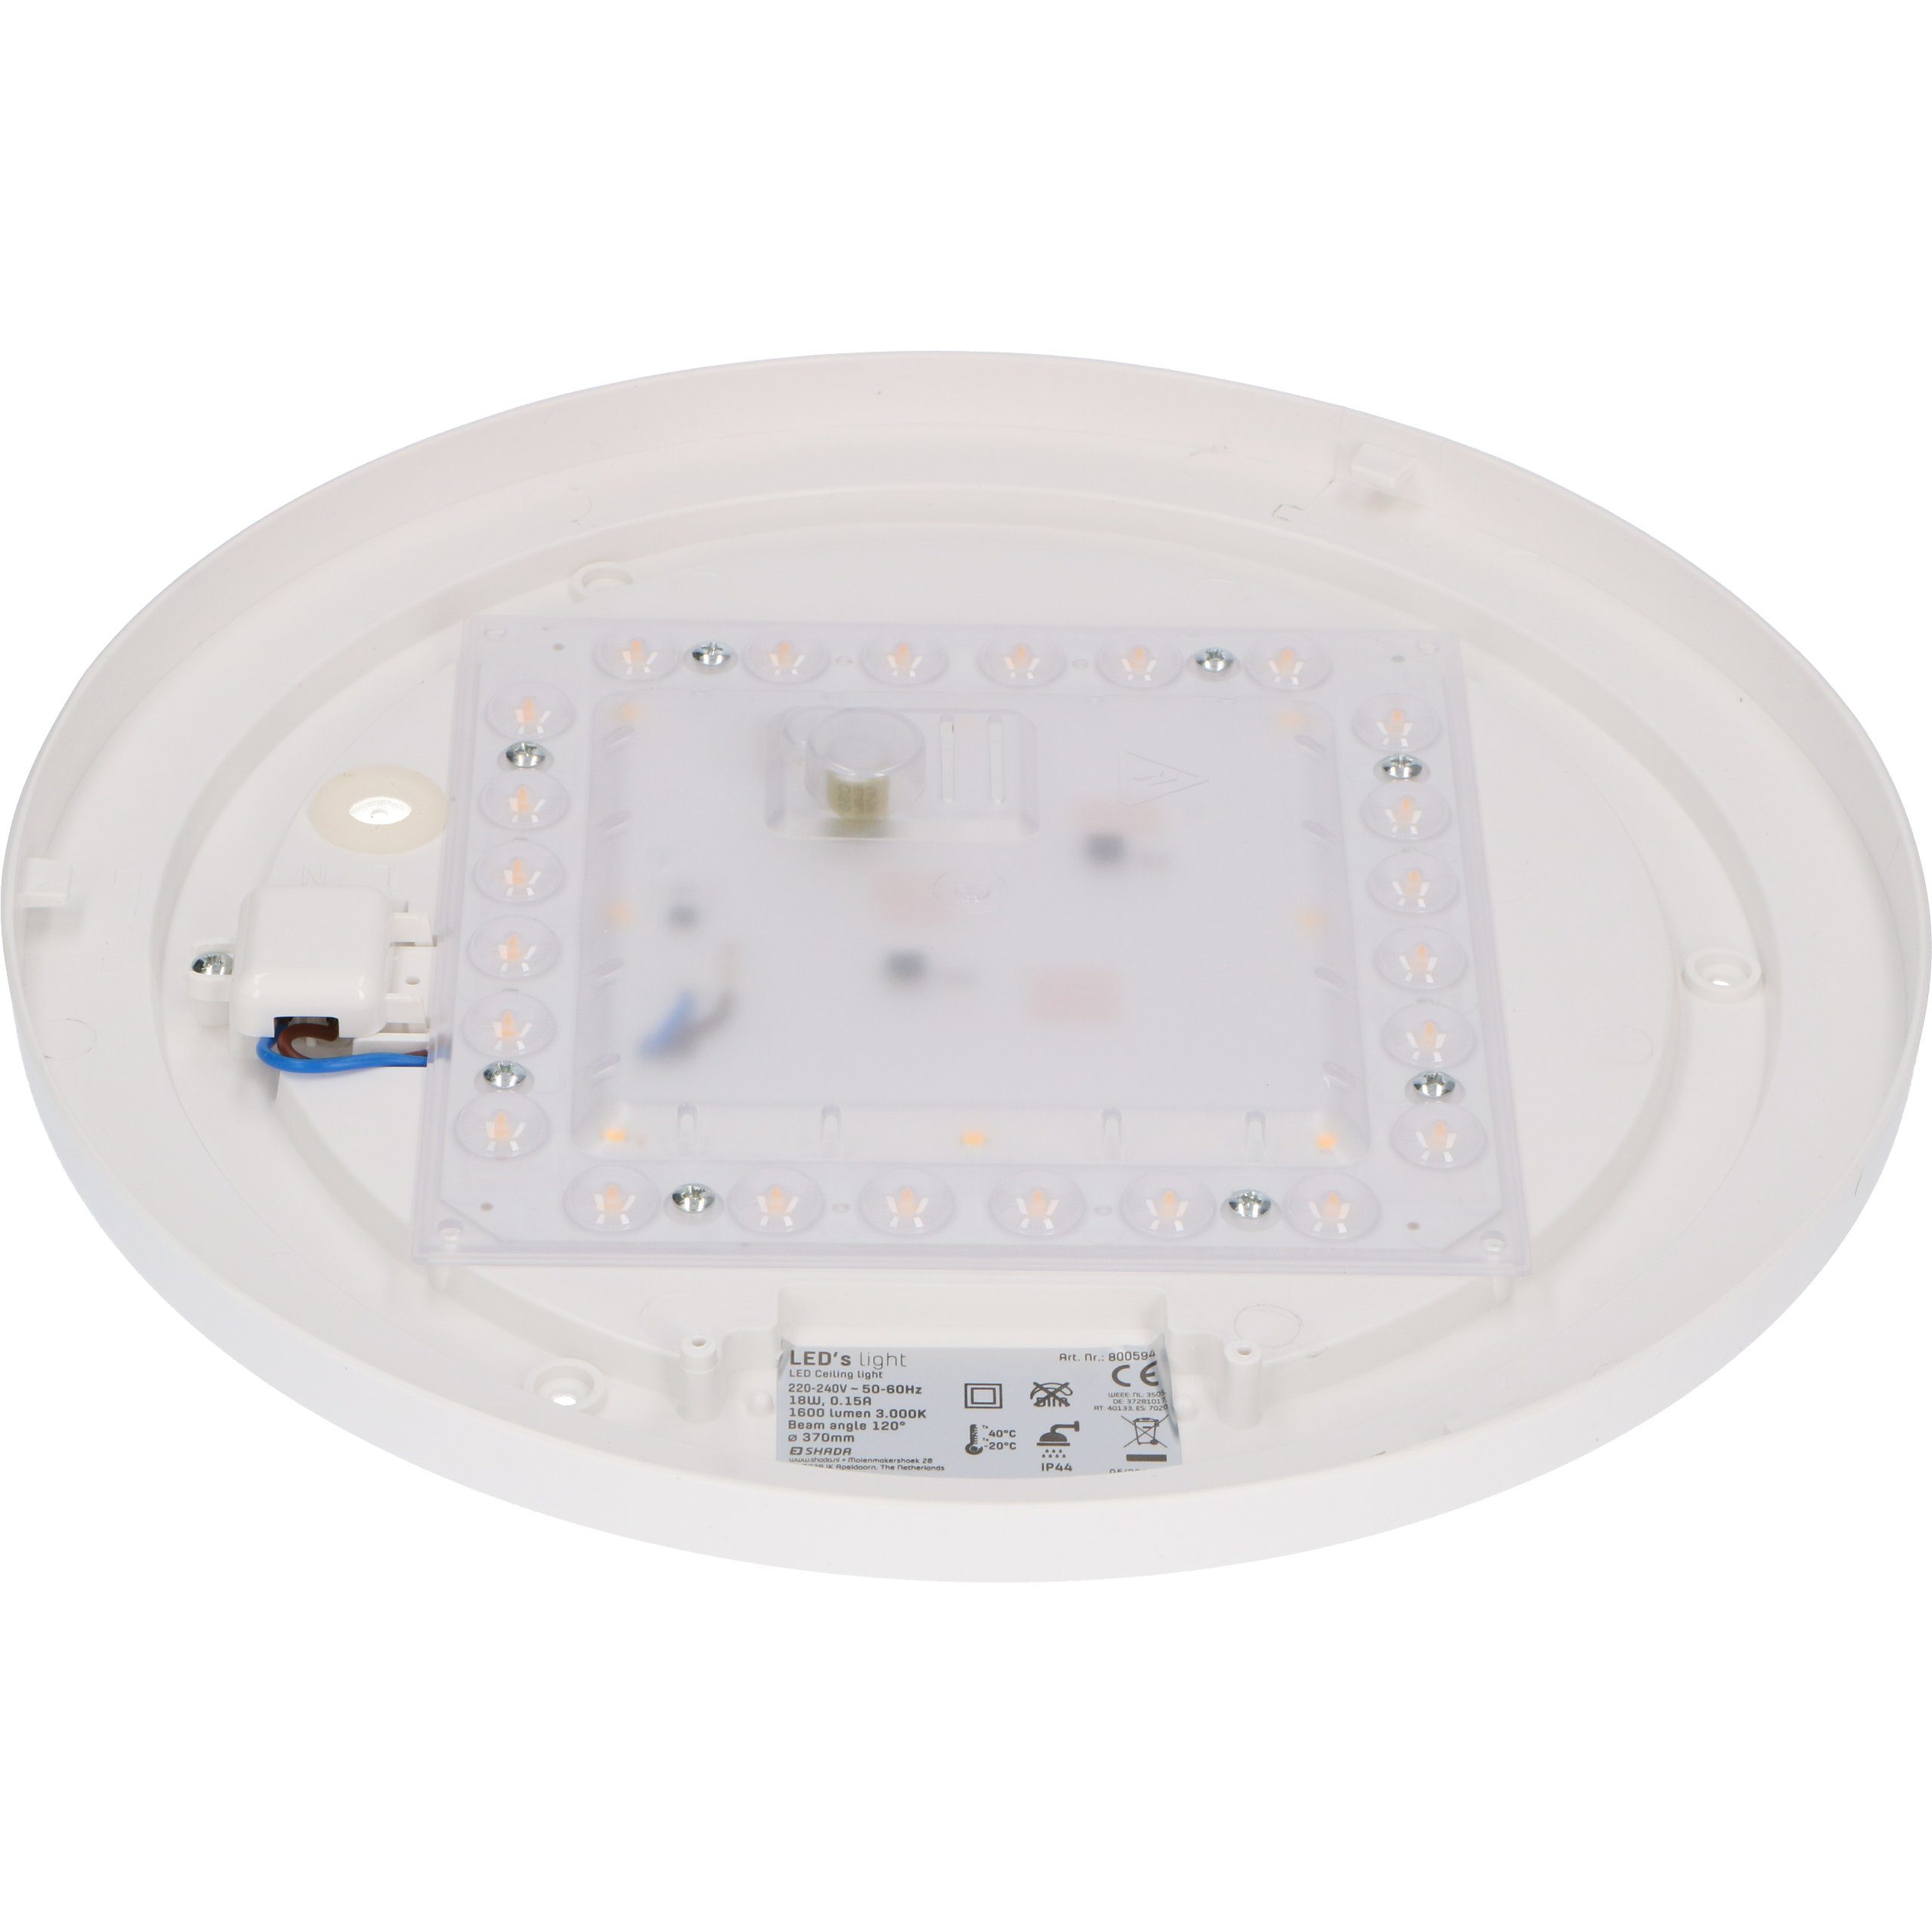 LED's light 37cm 18W IP44 Deckenleuchte warmweiß 0800594 3 geeignet Schutzbereich LED Deckenleuchte, LED